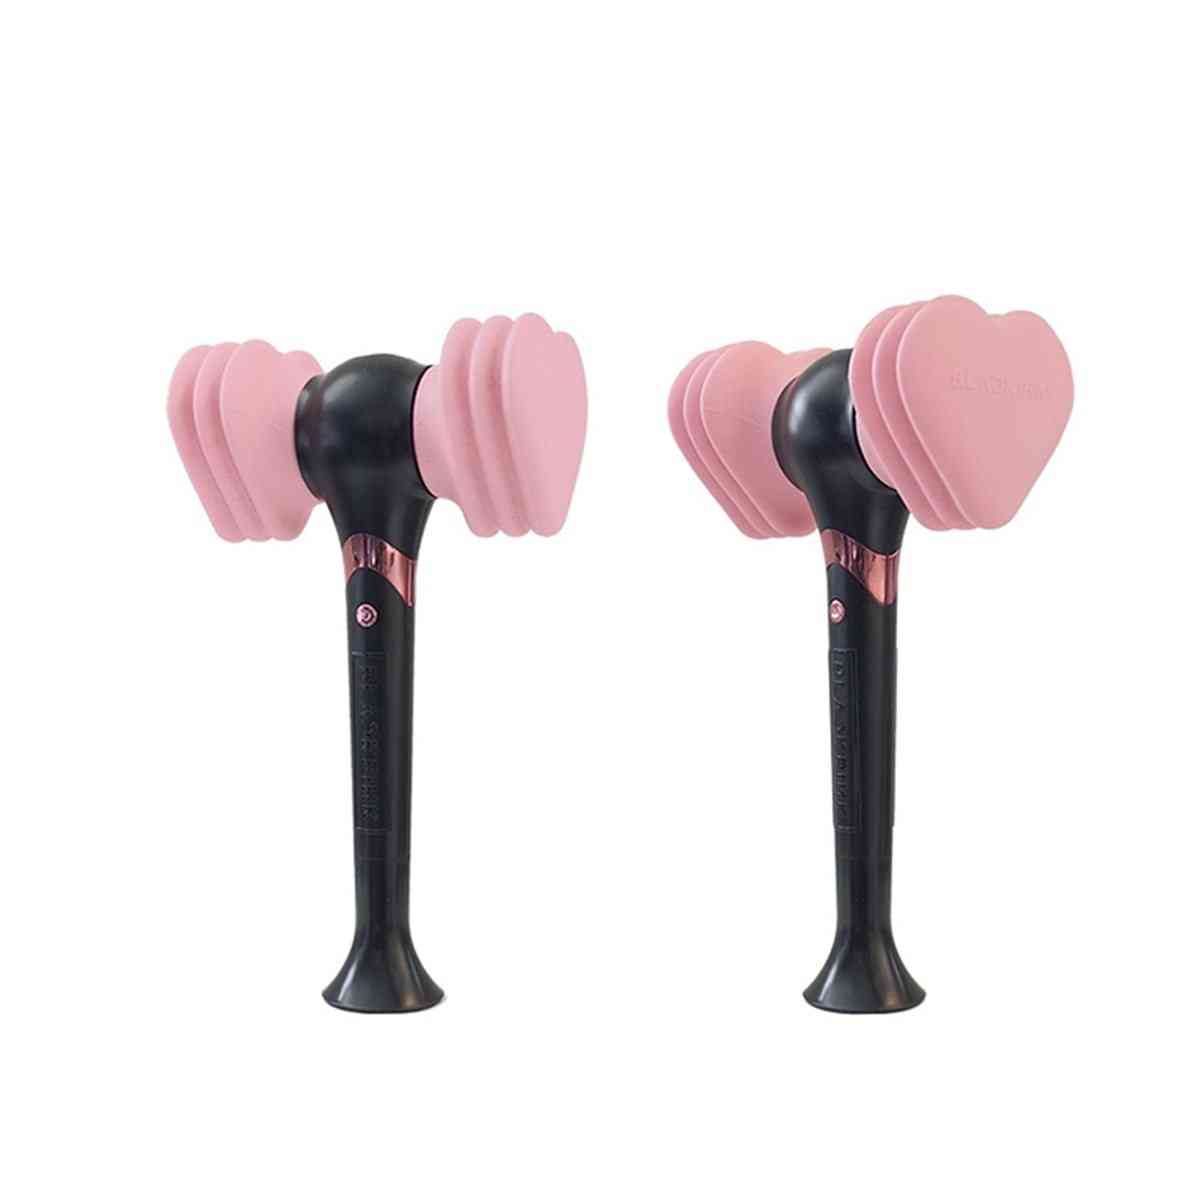 Offizieller blackpink lightstick, konzert glühlampe hammer lightstick lisa jennie rose fans geschenke leuchtende spielzeuge (pink) -